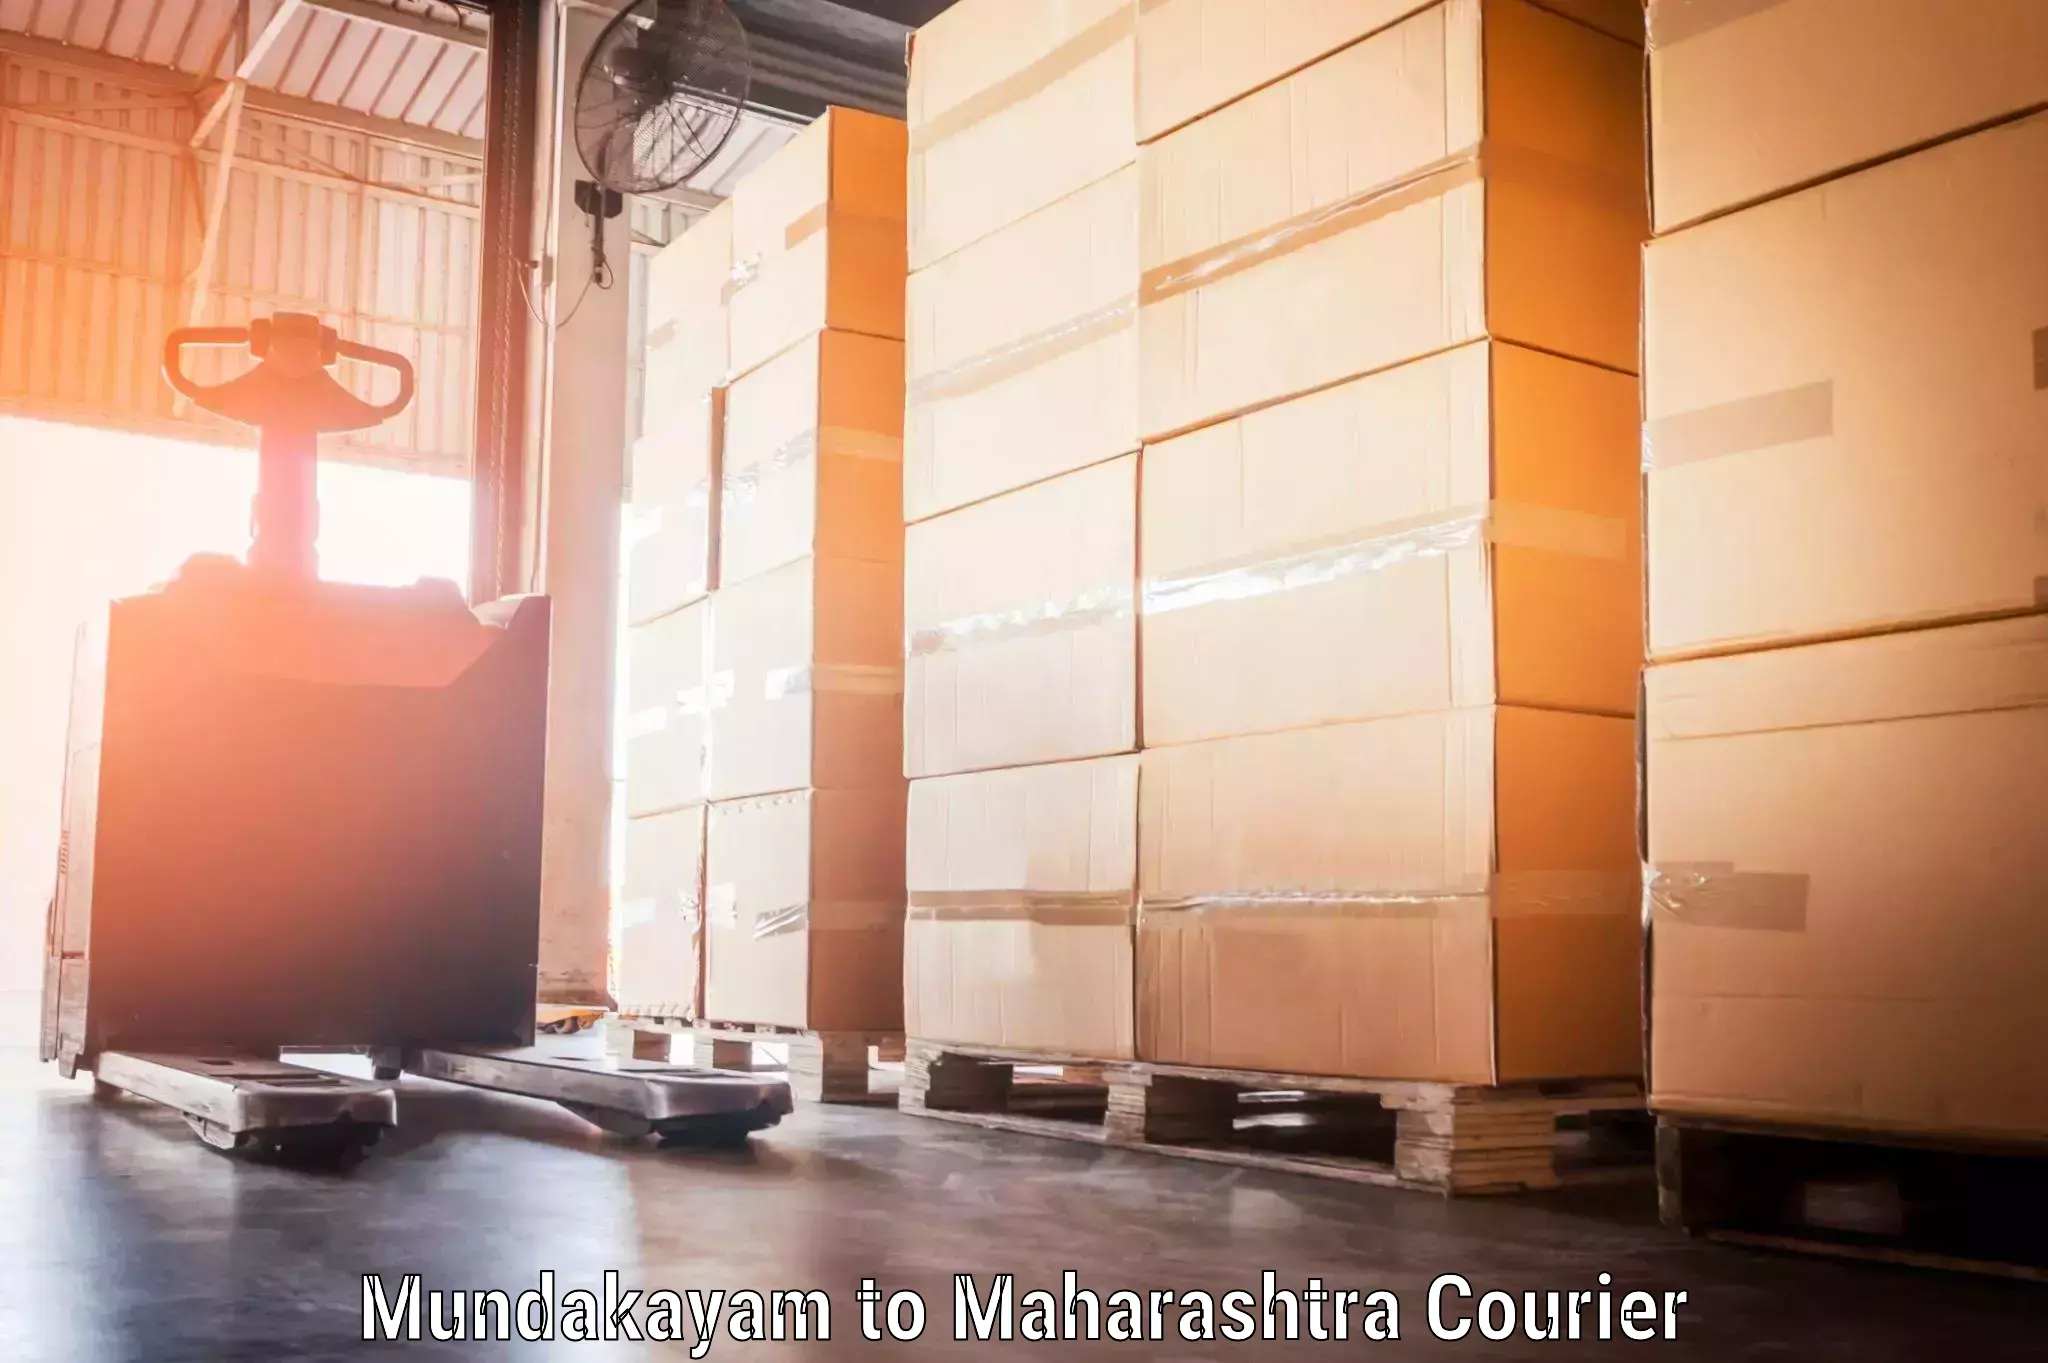 Baggage shipping service Mundakayam to Maharashtra